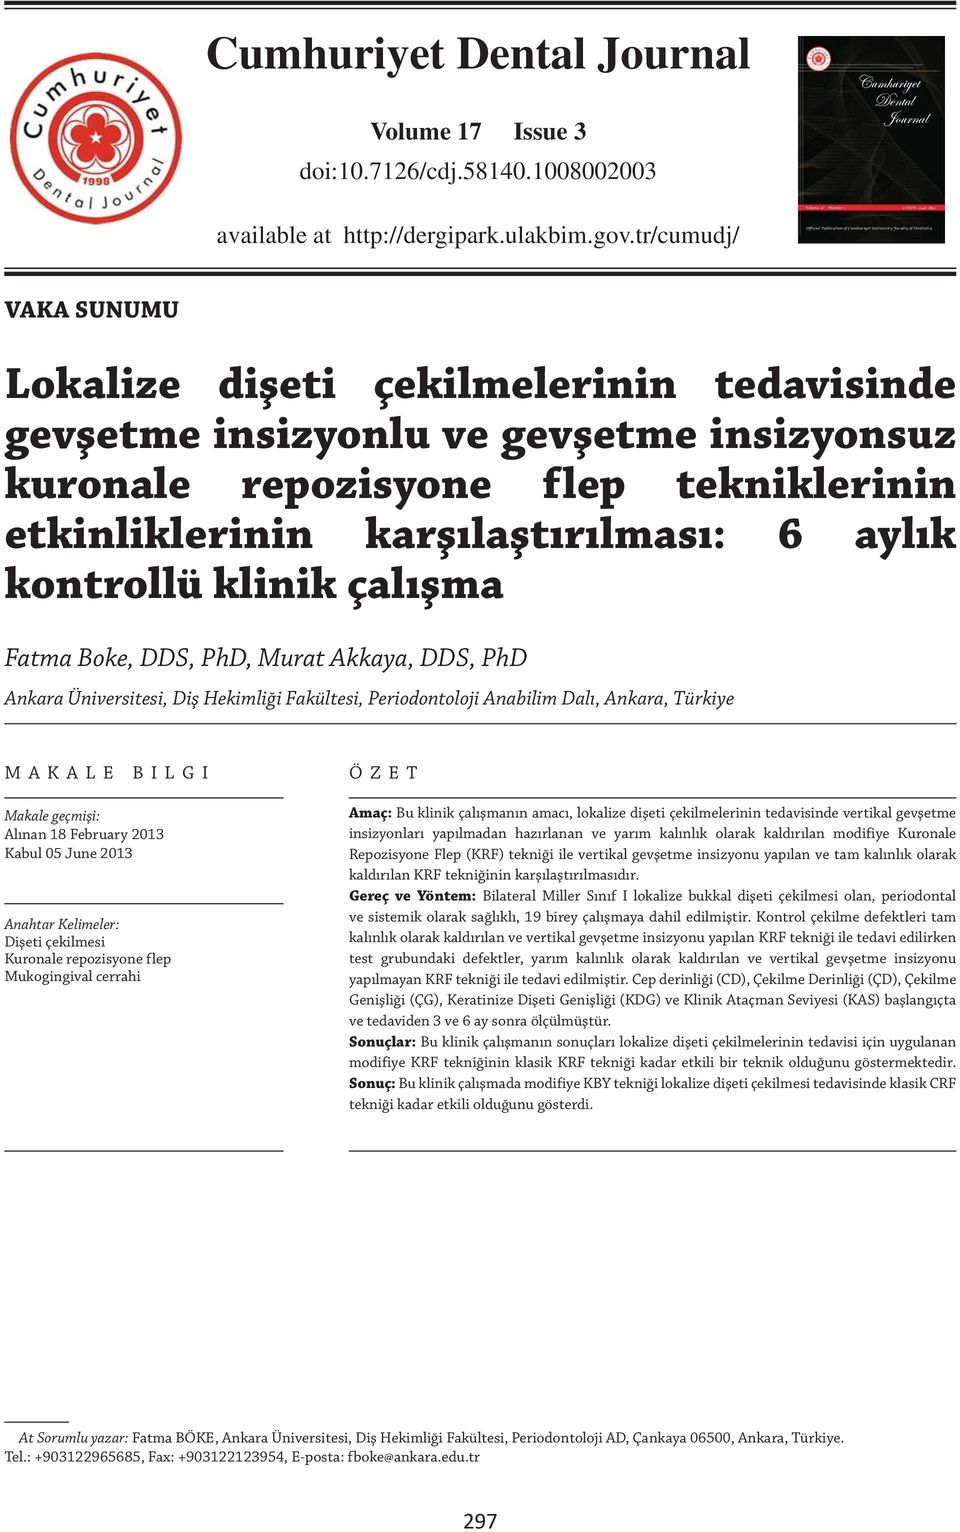 gevşetme insizyonsuz kuronale repozisyone flep tekniklerinin etkinliklerinin karşılaştırılması: 6 aylık kontrollü klinik çalışma Fatma Boke, DDS, PhD, Murat Akkaya, DDS, PhD Ankara Üniversitesi, Diş